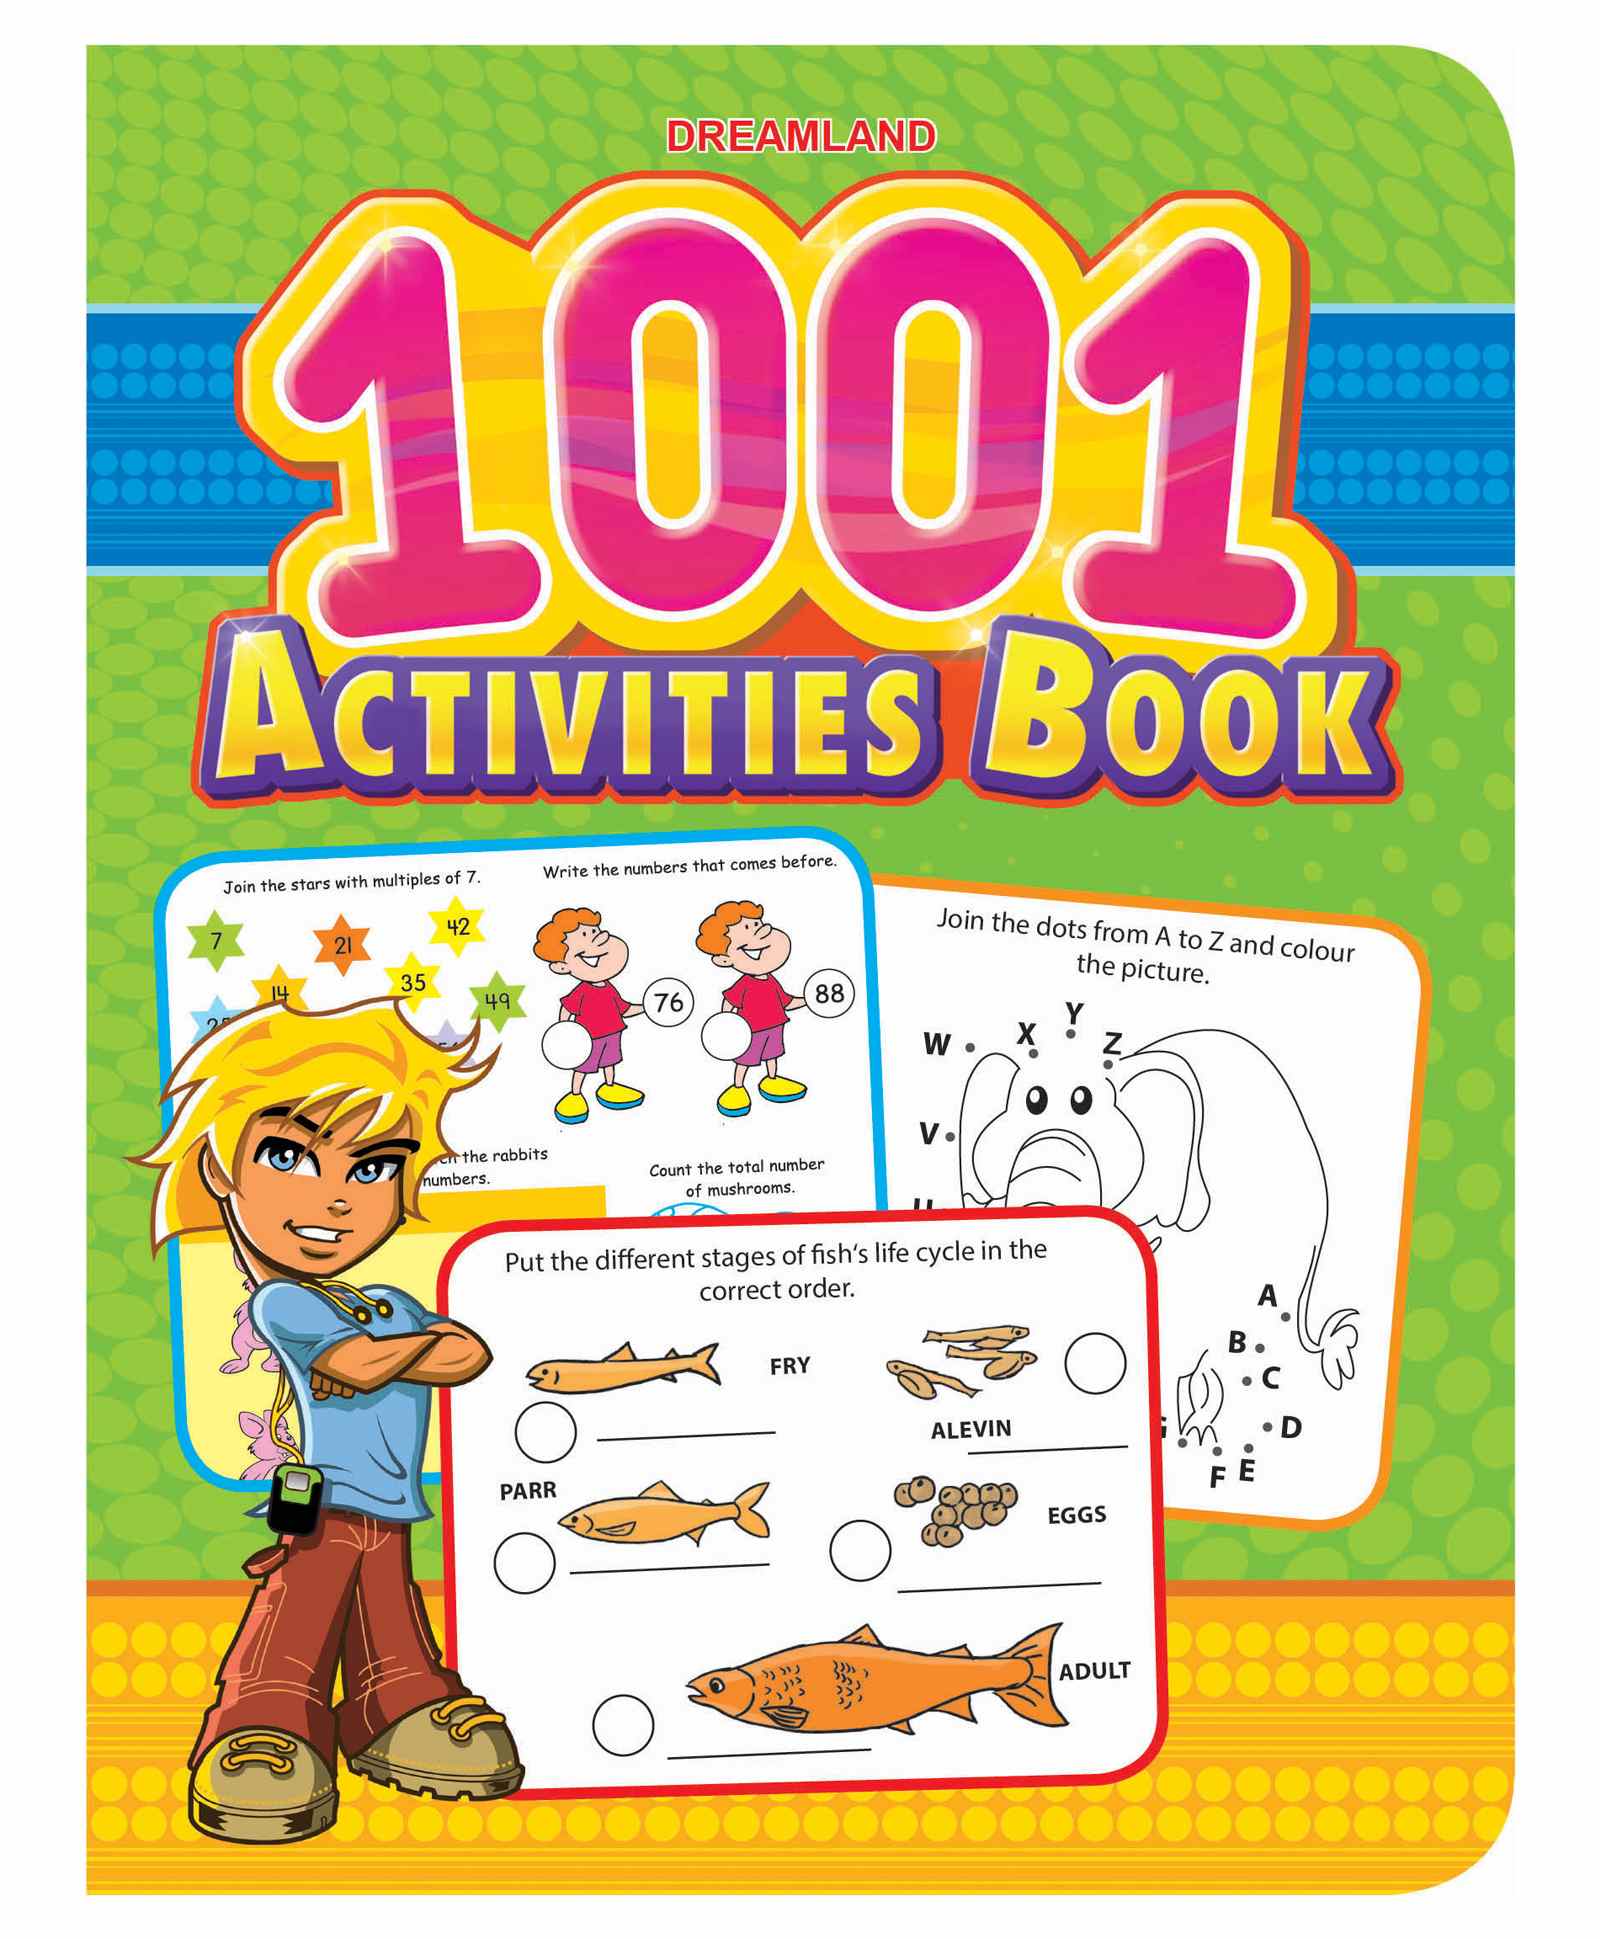 Activity book pdf. Activity book for children. Activity book пример. Activity book 2-3 age. Активити- книга с заданиями "Гравюры. Для девочек",.